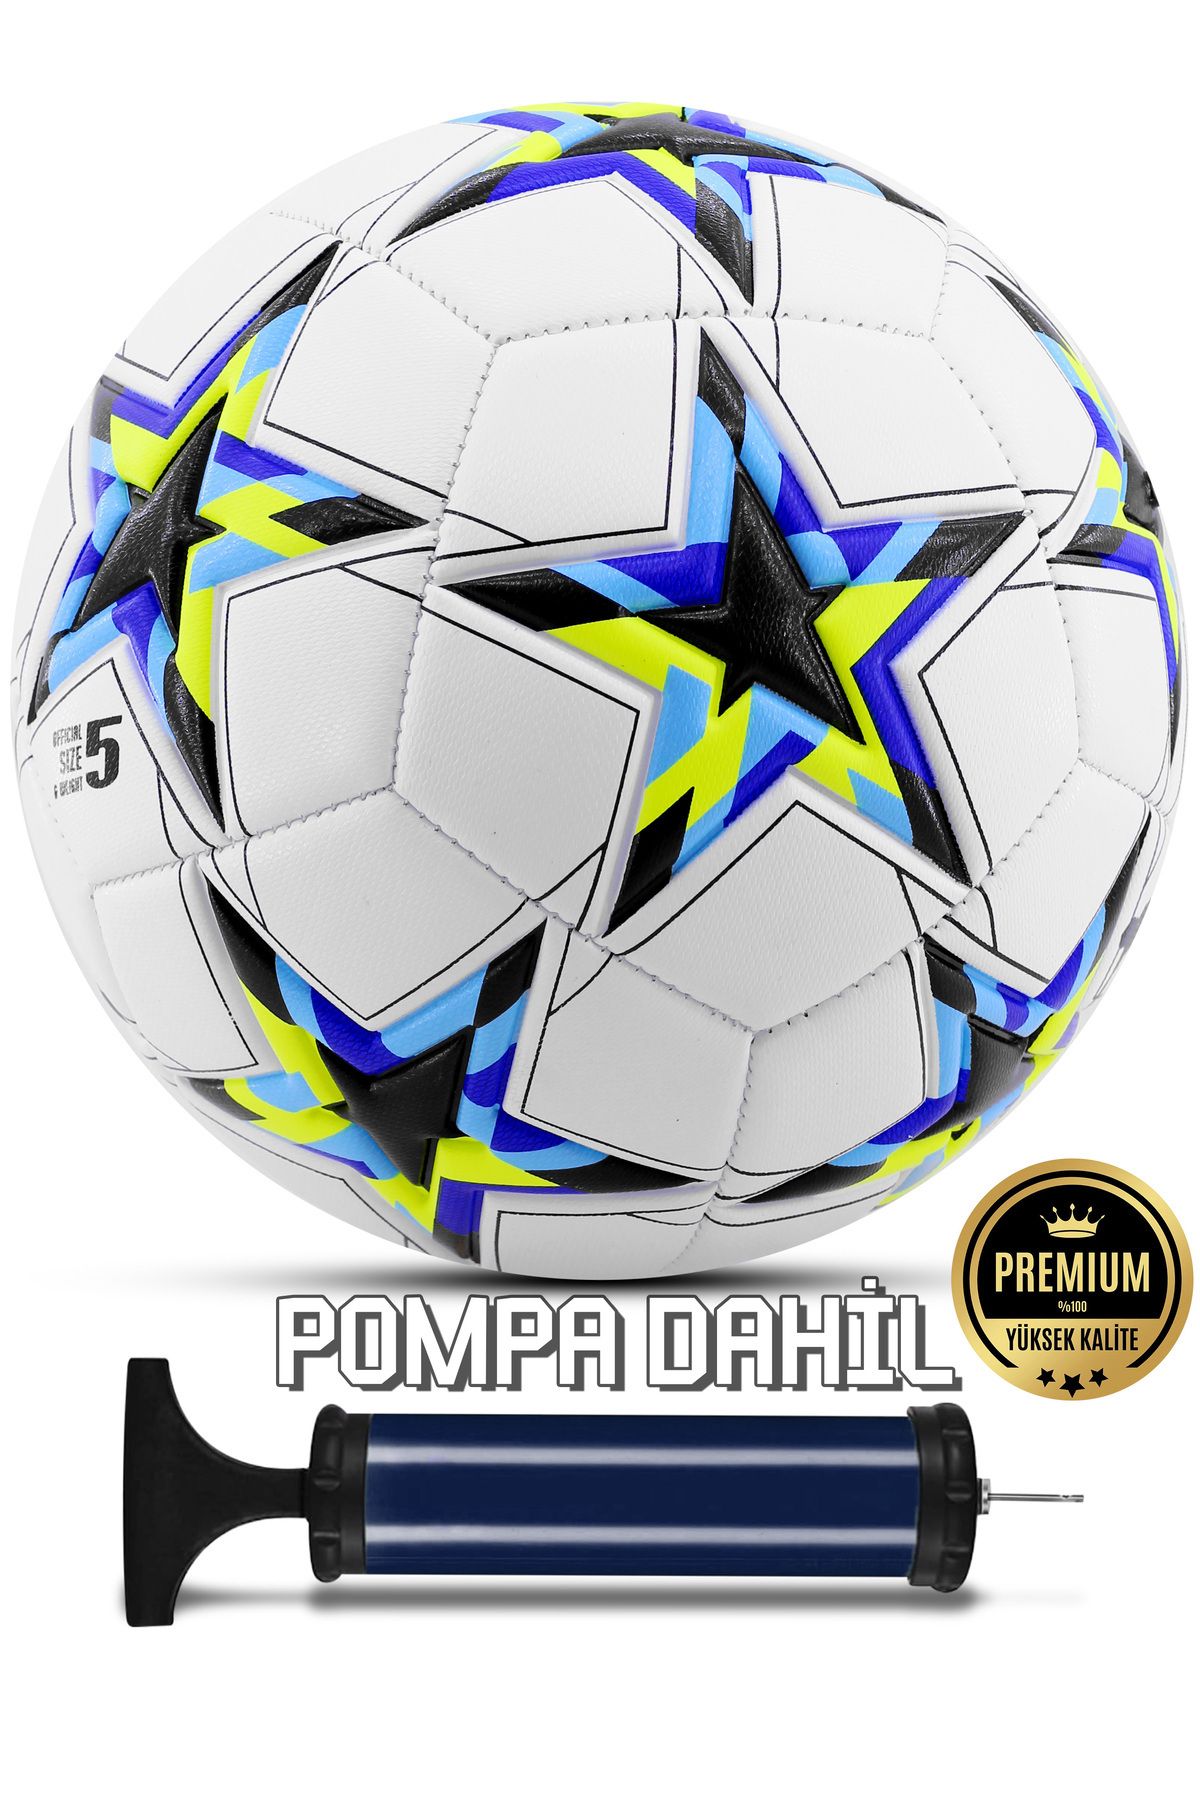 teknotrust Pompa dahildir Orijinal Futbol Topu Şampiyonlar Ligi Pompalı Sert Zemin Halı Saha Futbol Topu No:5